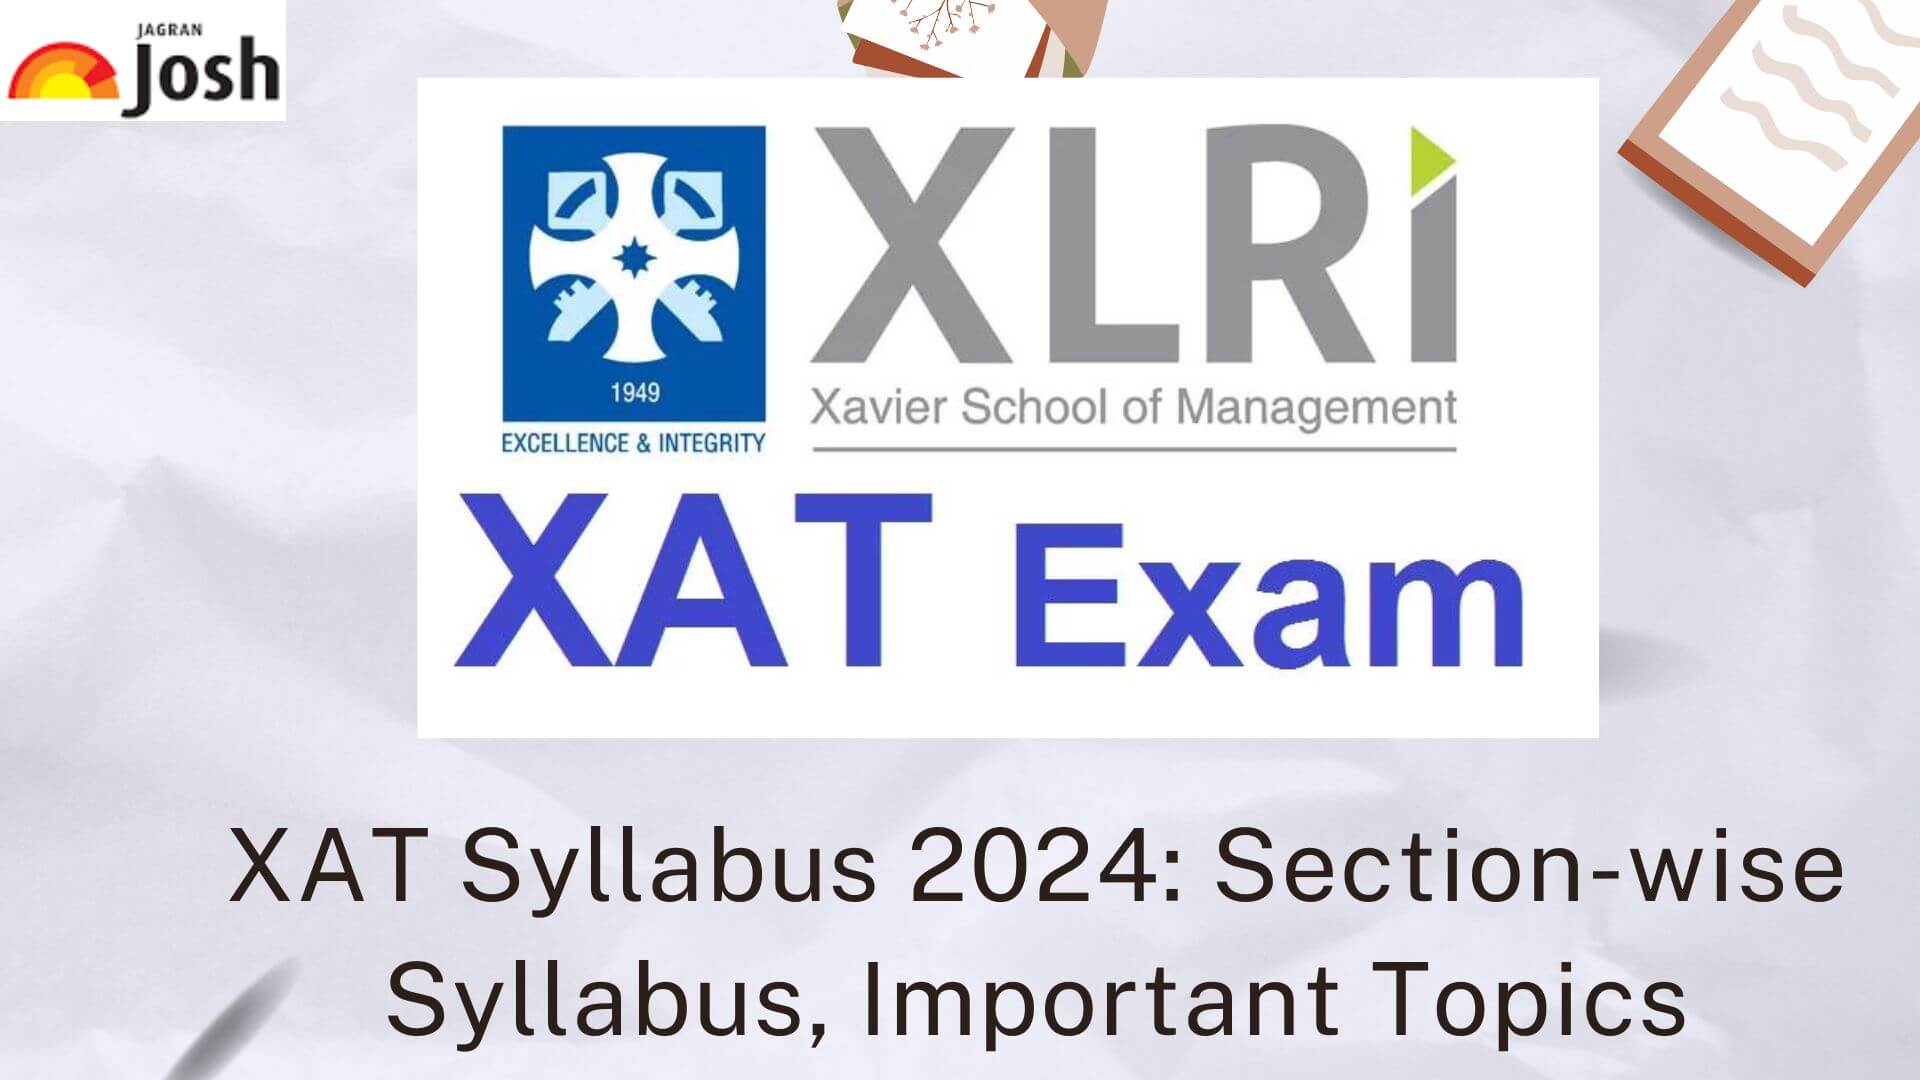 XAT Syllabus 2024 Sectionwise XAT Exam Syllabus PDF!